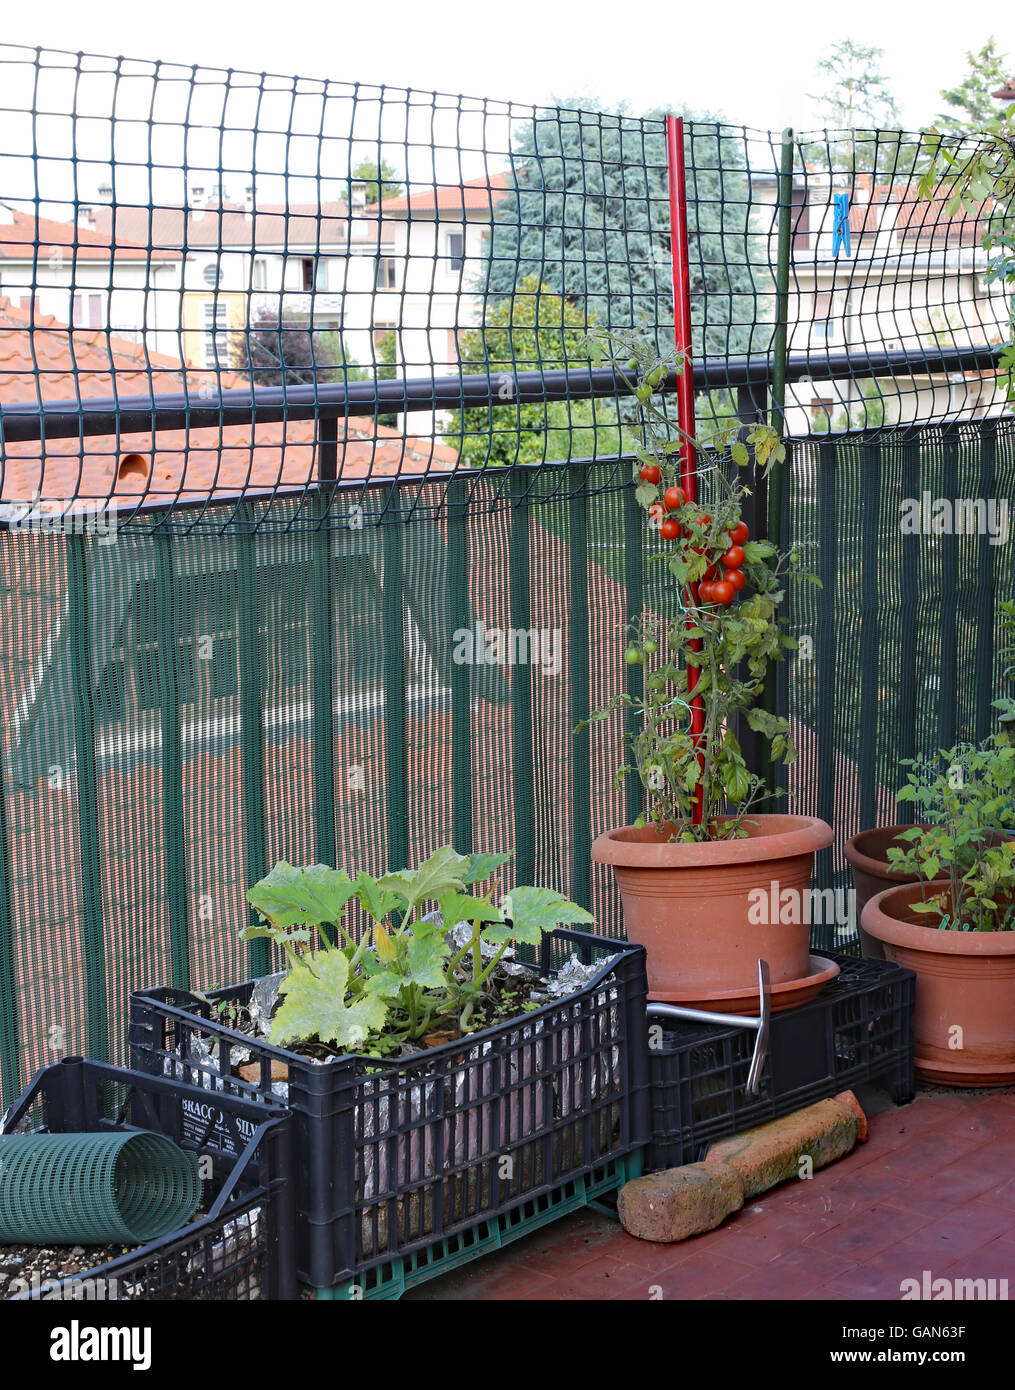 Topfpflanze mit roten strauchtomaten in einem kleinen Stadtgarten auf der Terrassenwohnung in der Stadt Stockfoto